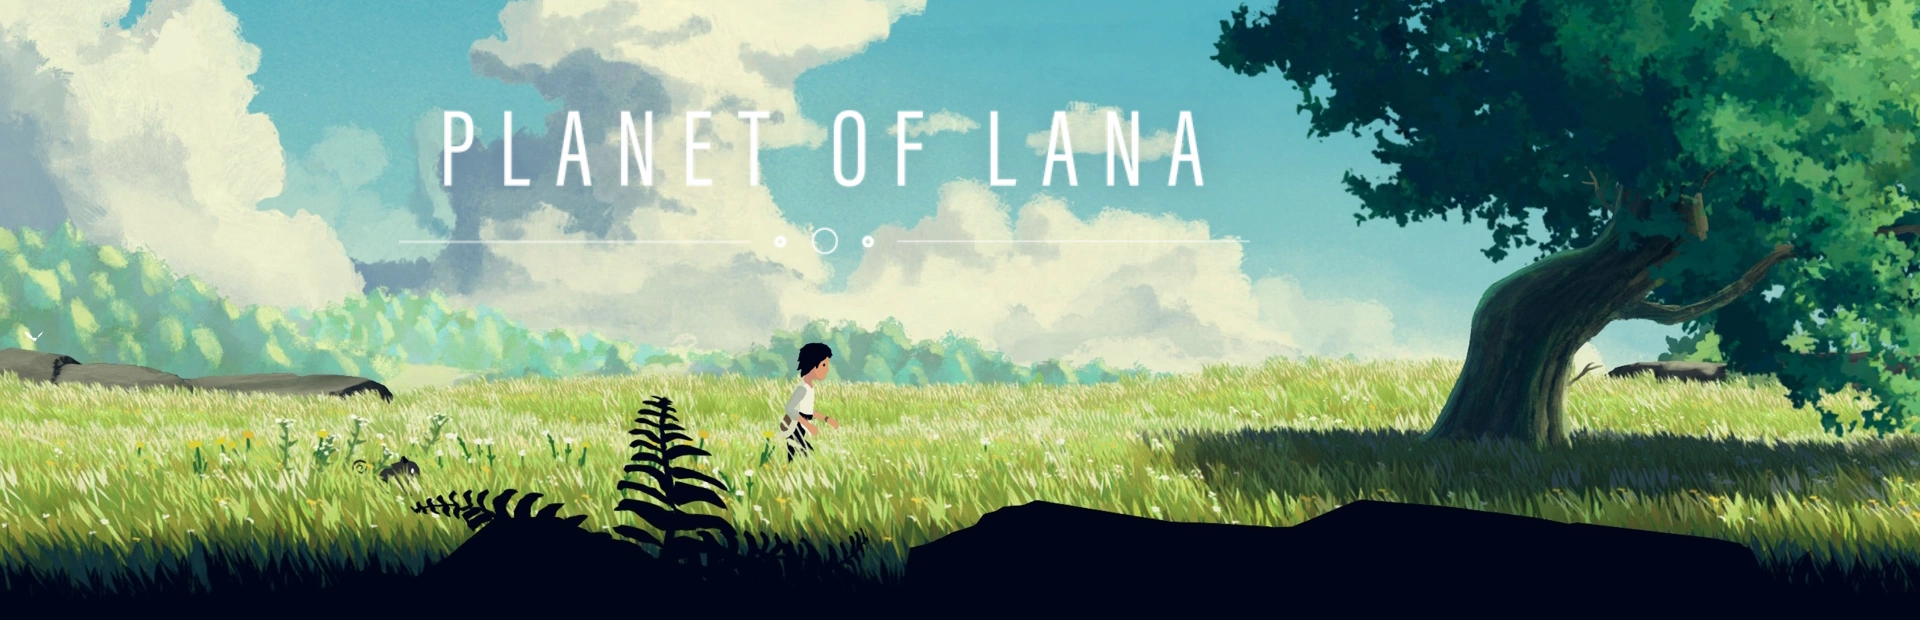 دانلود بازی Planet of Lana برای کامپیوتر | گیمباتو